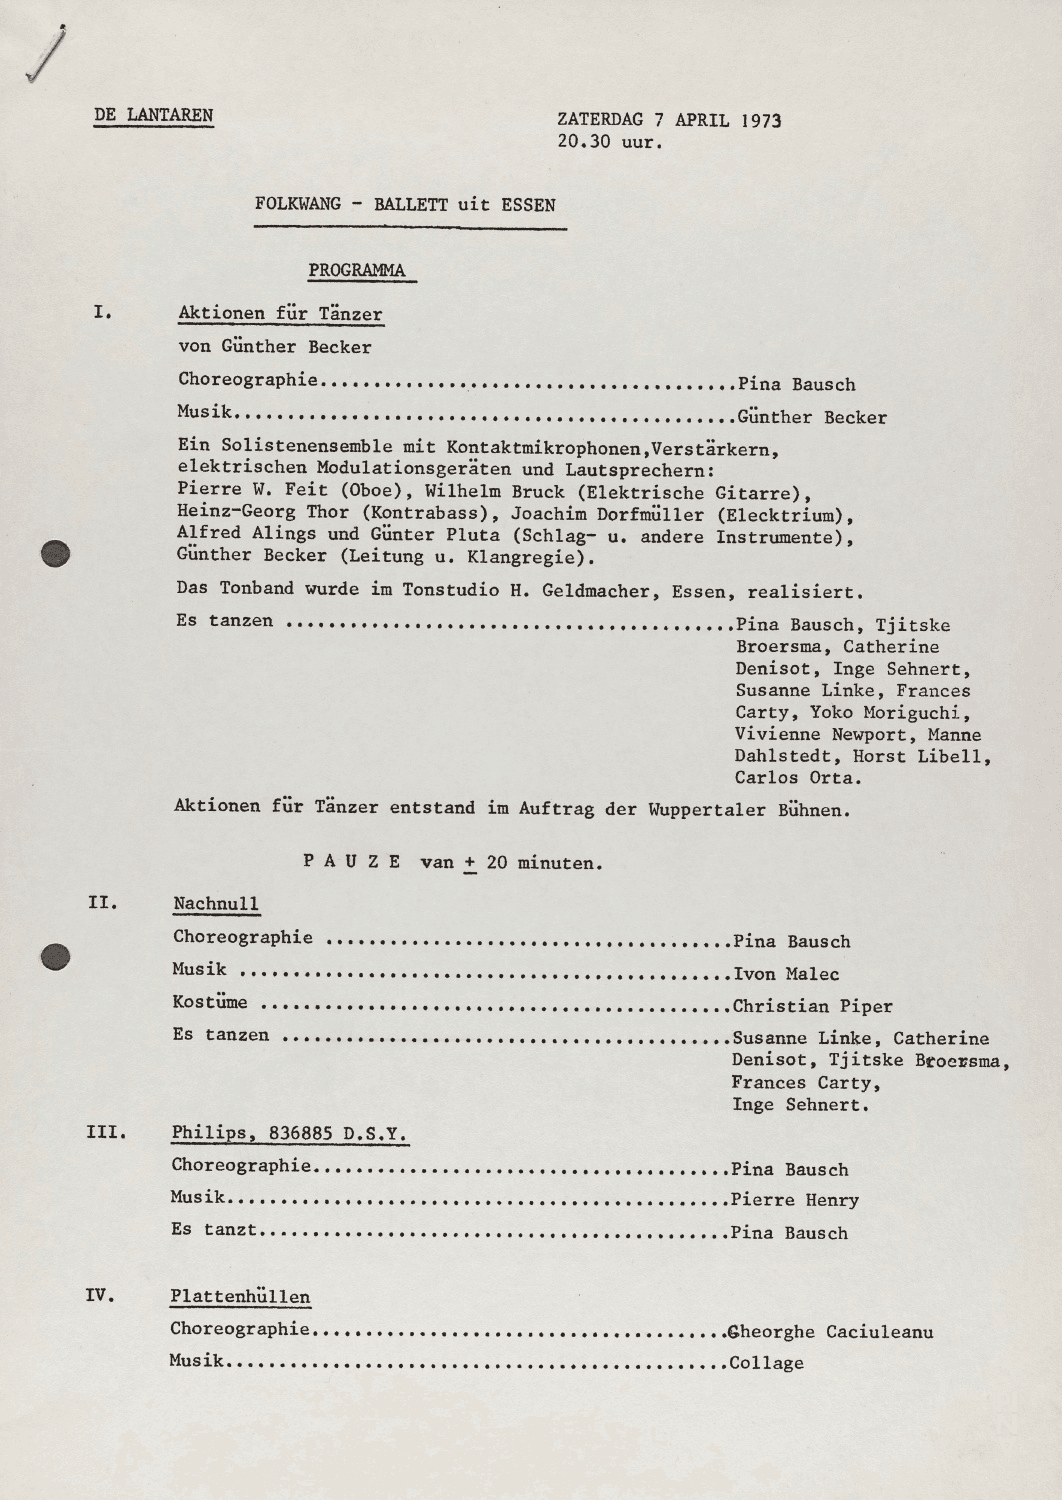 Evening leaflet for “Nachnull (After Zero)”, “Aktionen für Tänzer”, “PHILIPS 836 885 DSY” and “Wiegenlied” by Pina Bausch with Folkwangballett in in Rotterdam, April 7, 1973